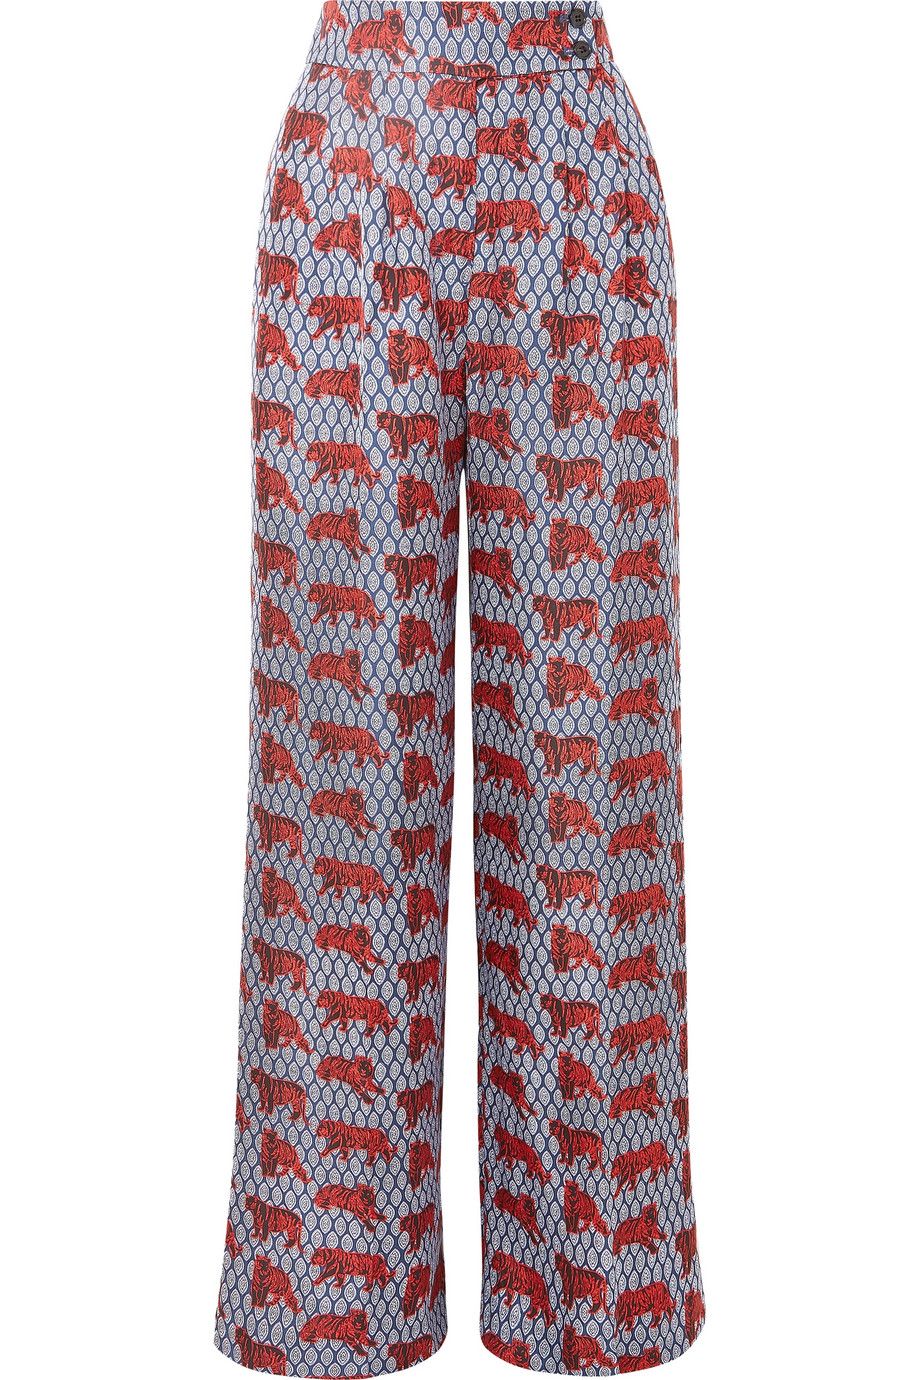 Best Pants on Sale-Pants for Under $500